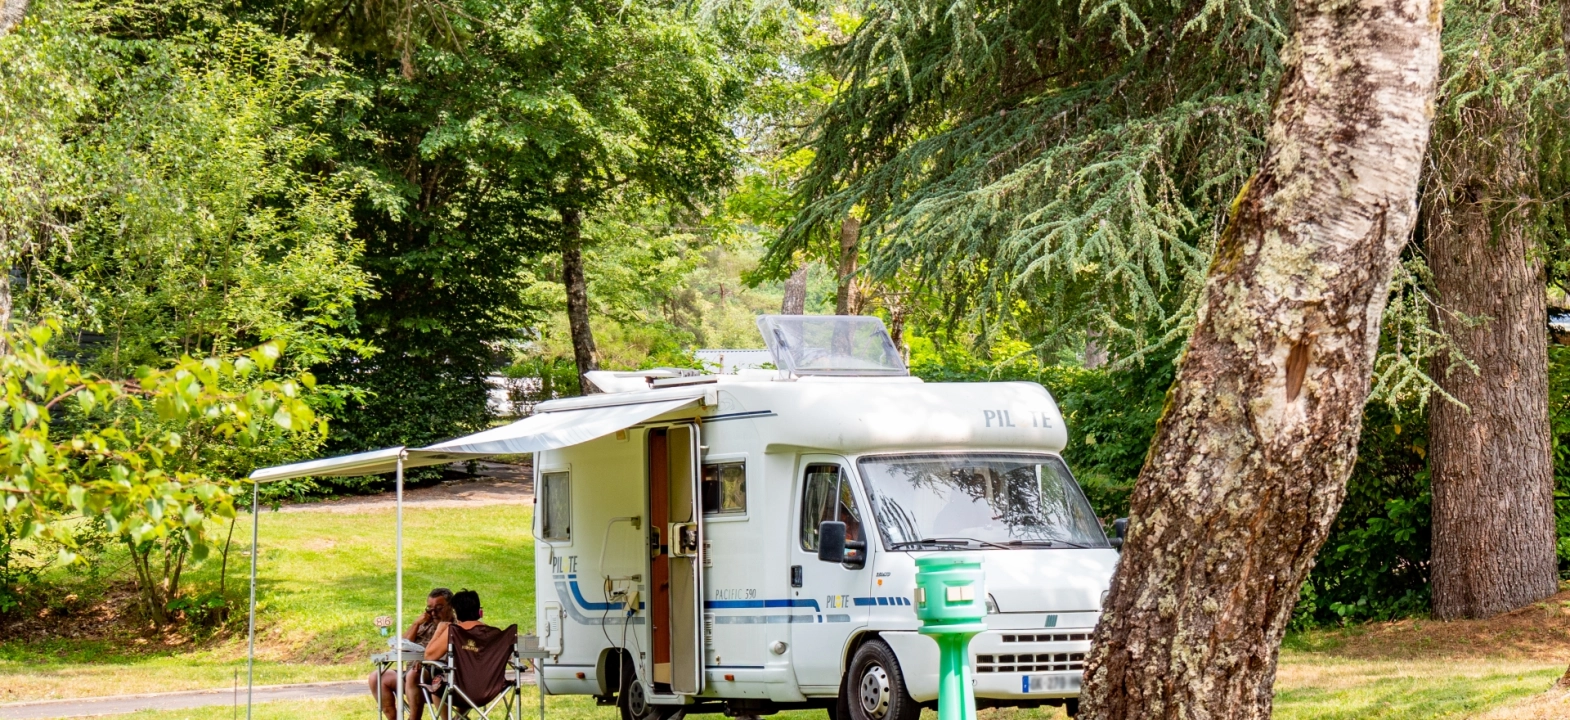 Staanplaatsen voor caravan/camper/tent